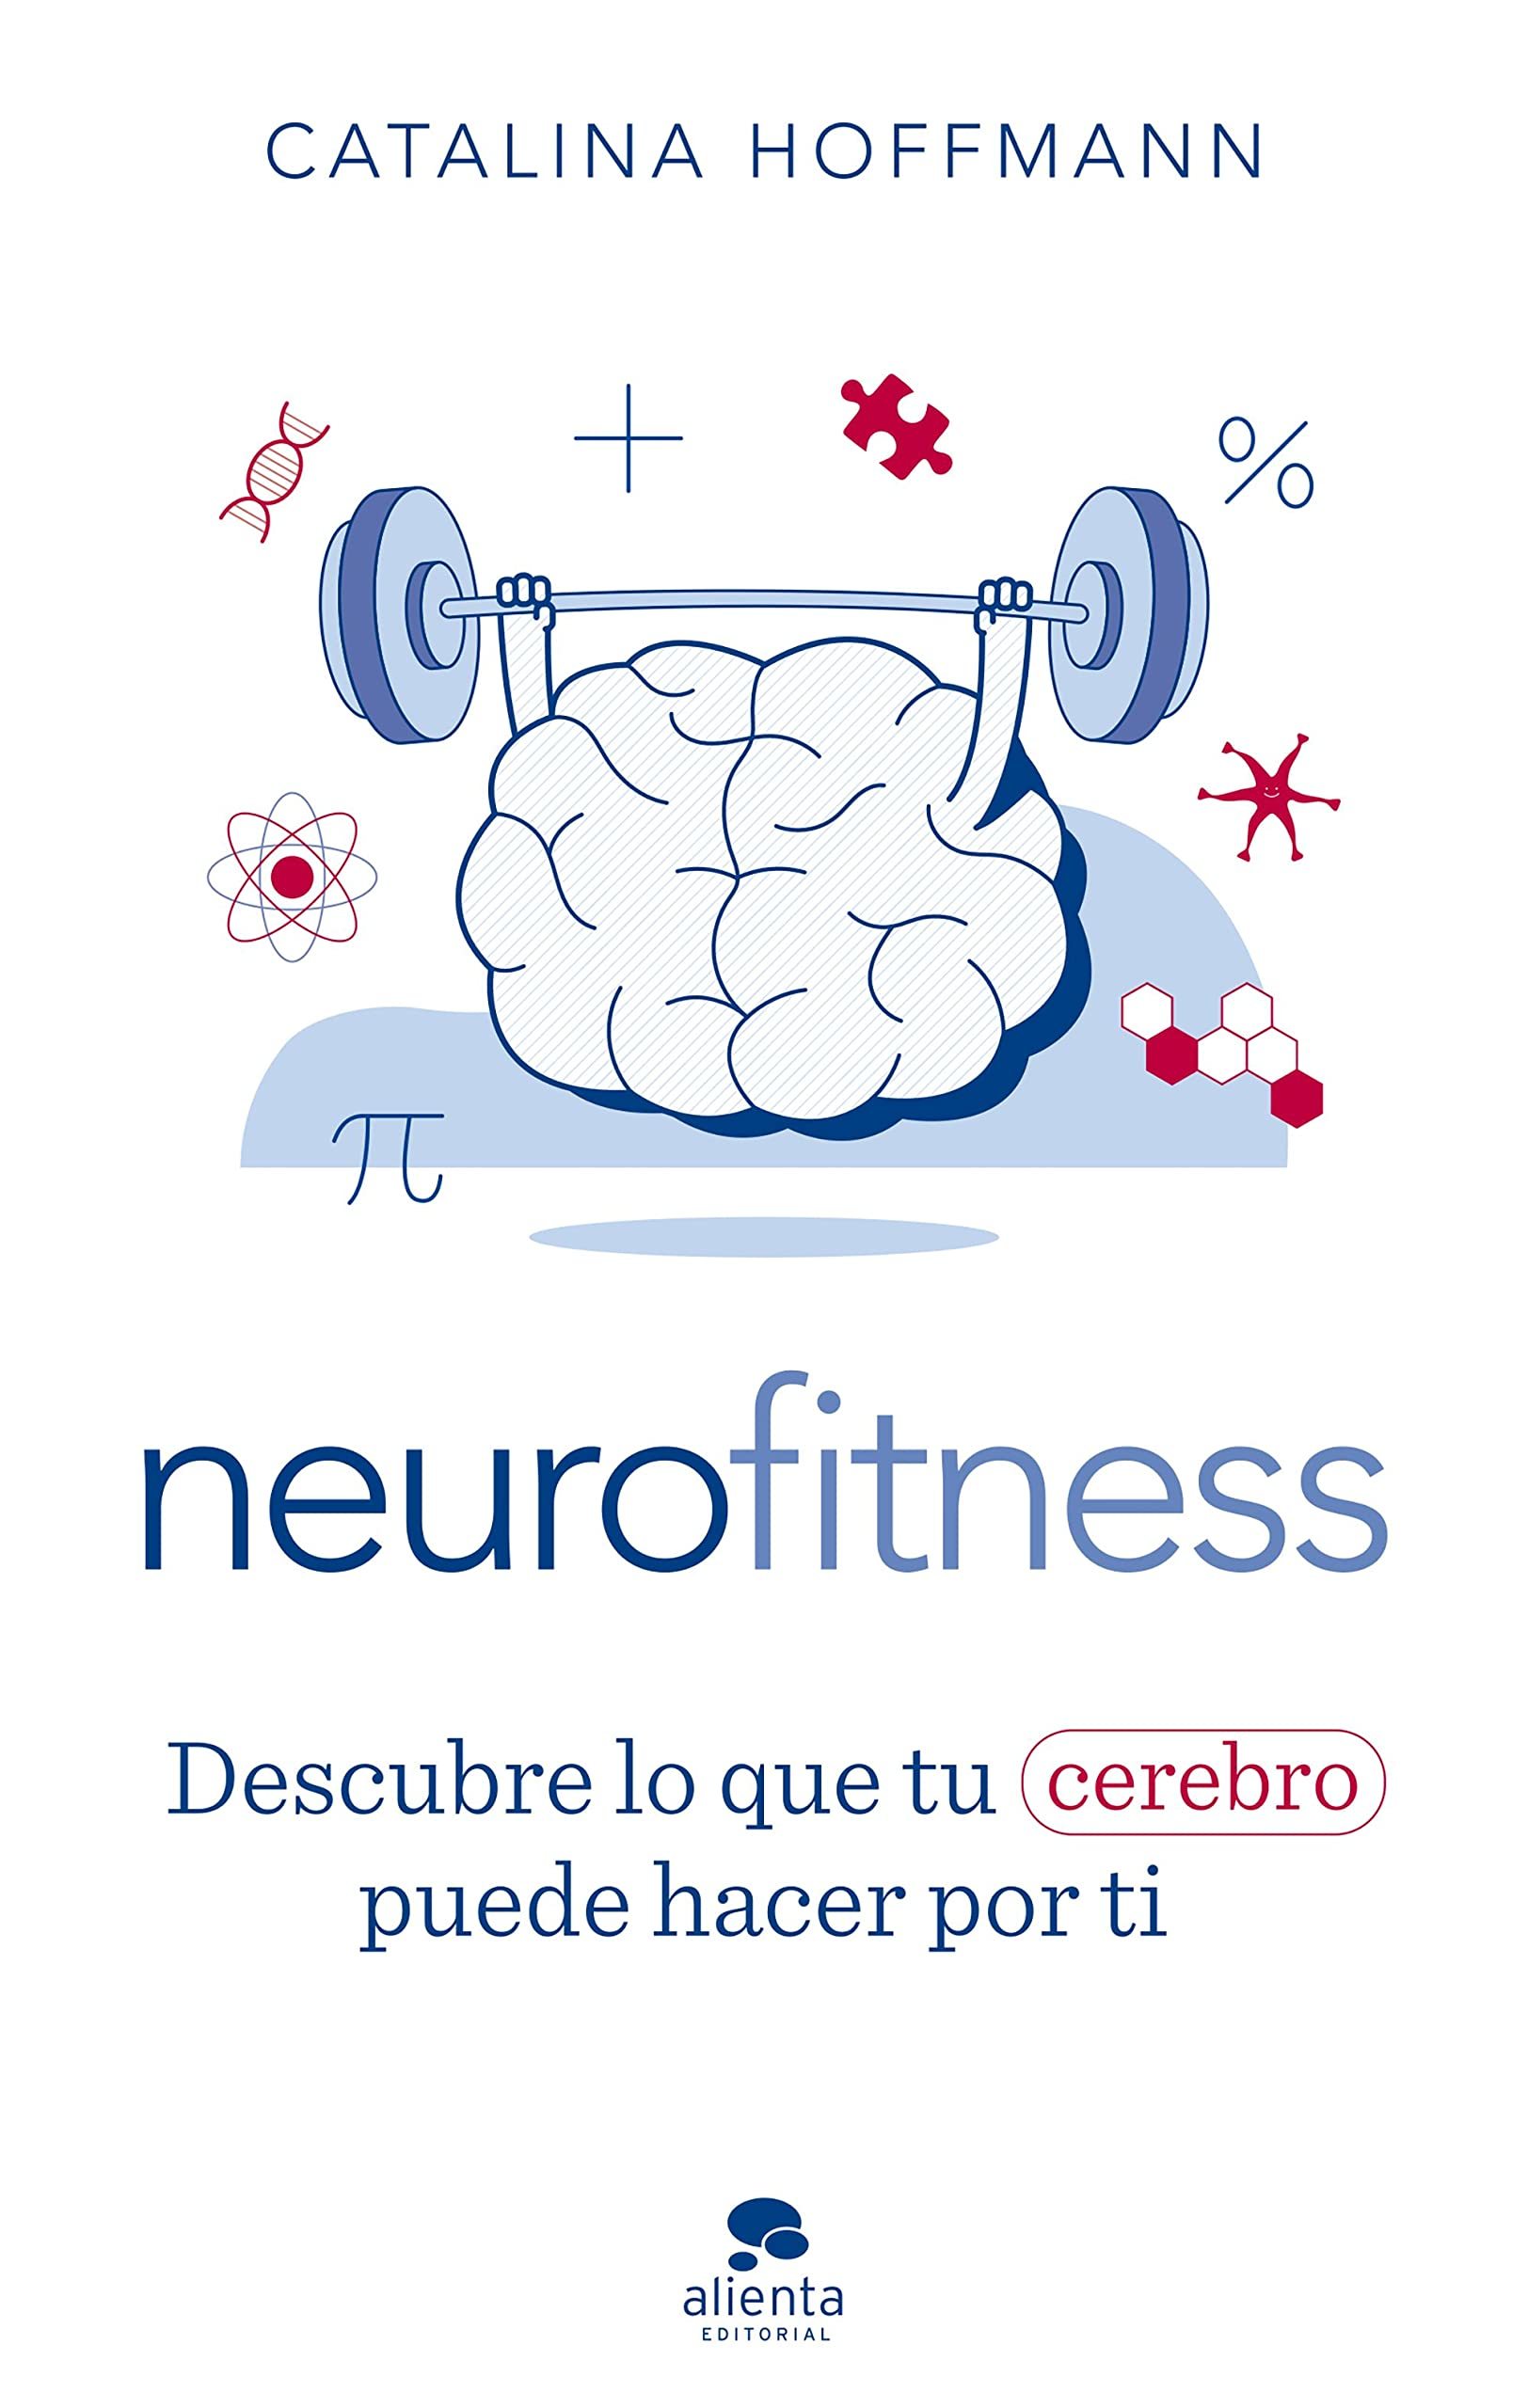 Neurofitness. Descubre lo que tu cerebro puede hacer por ti (Alienta editorial), el nuevo libro de Catalina Hoffmann.